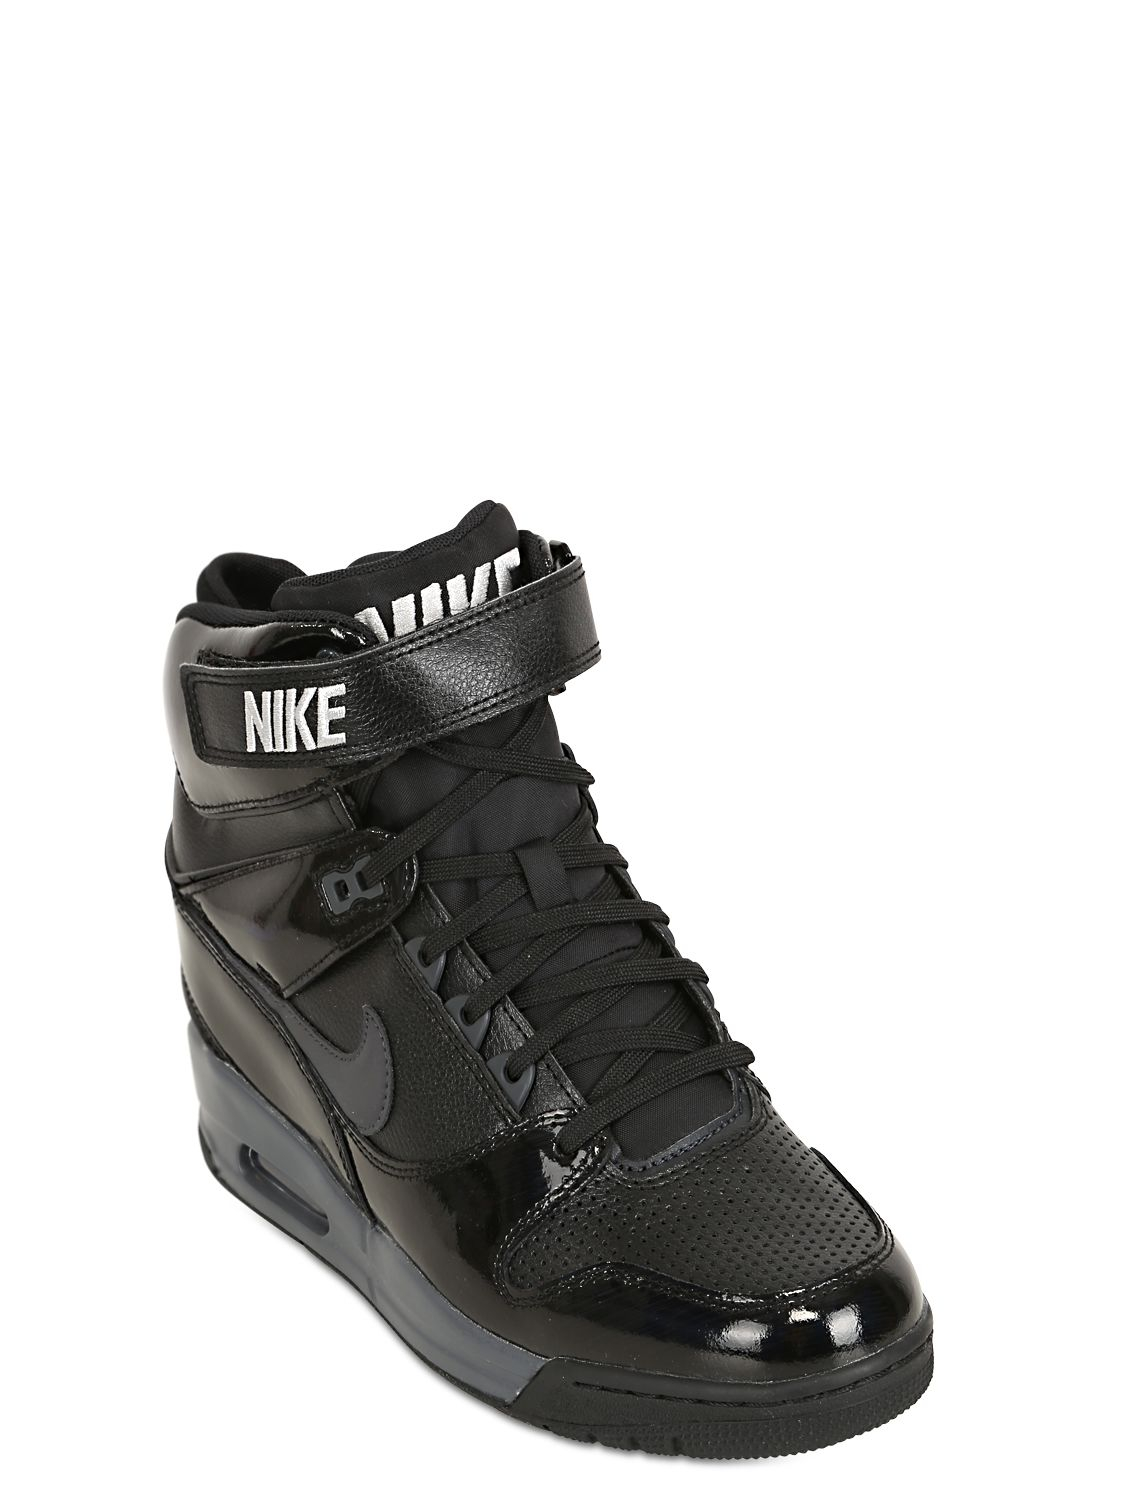 Nike Air Revolution Sneakers in Black | Lyst UK